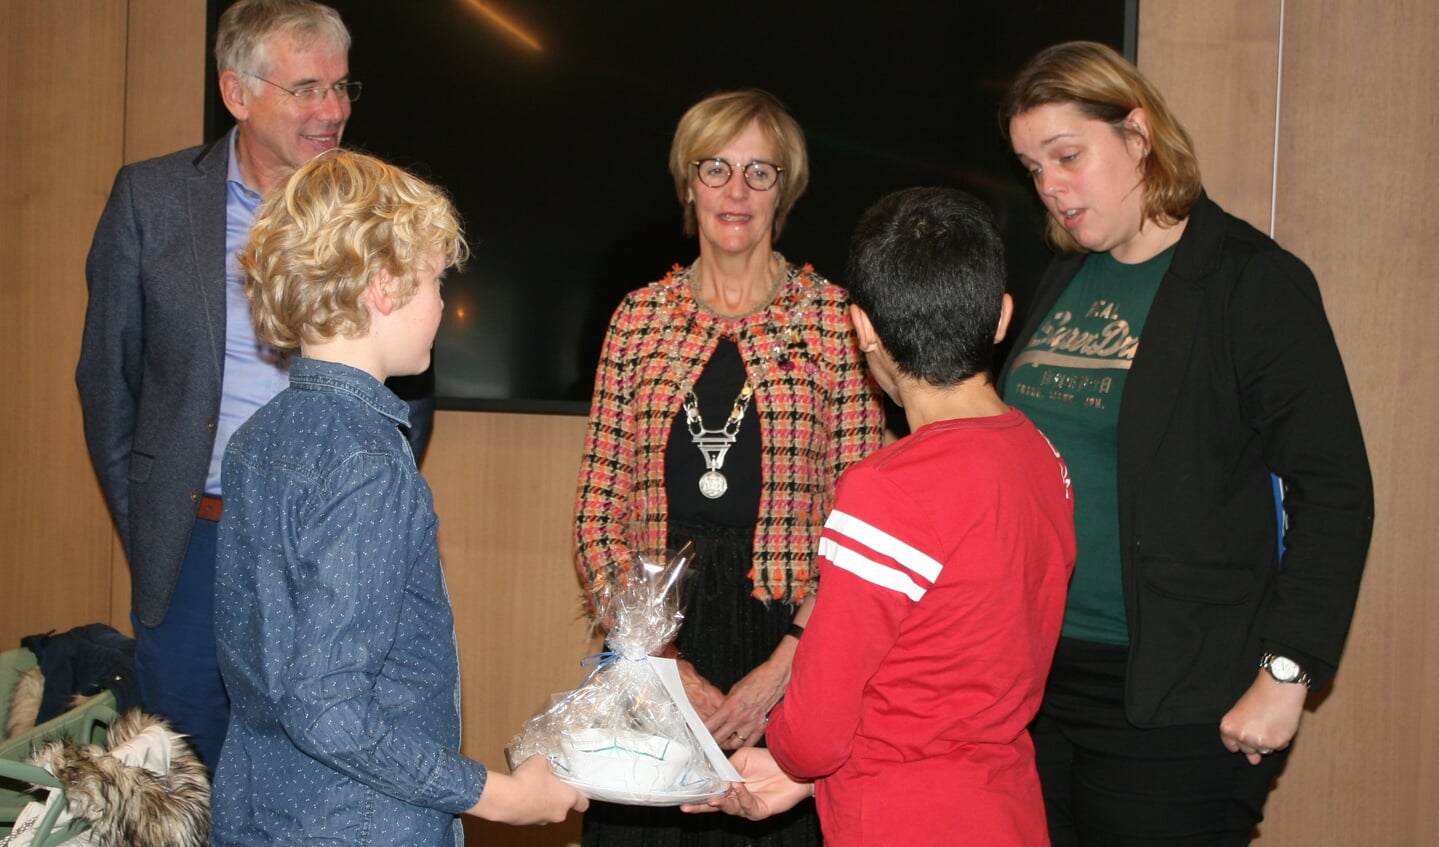 Burgemeester en wethouder kregen presentje van leerlingen ‘t Palet. Foto: Dinès Quist